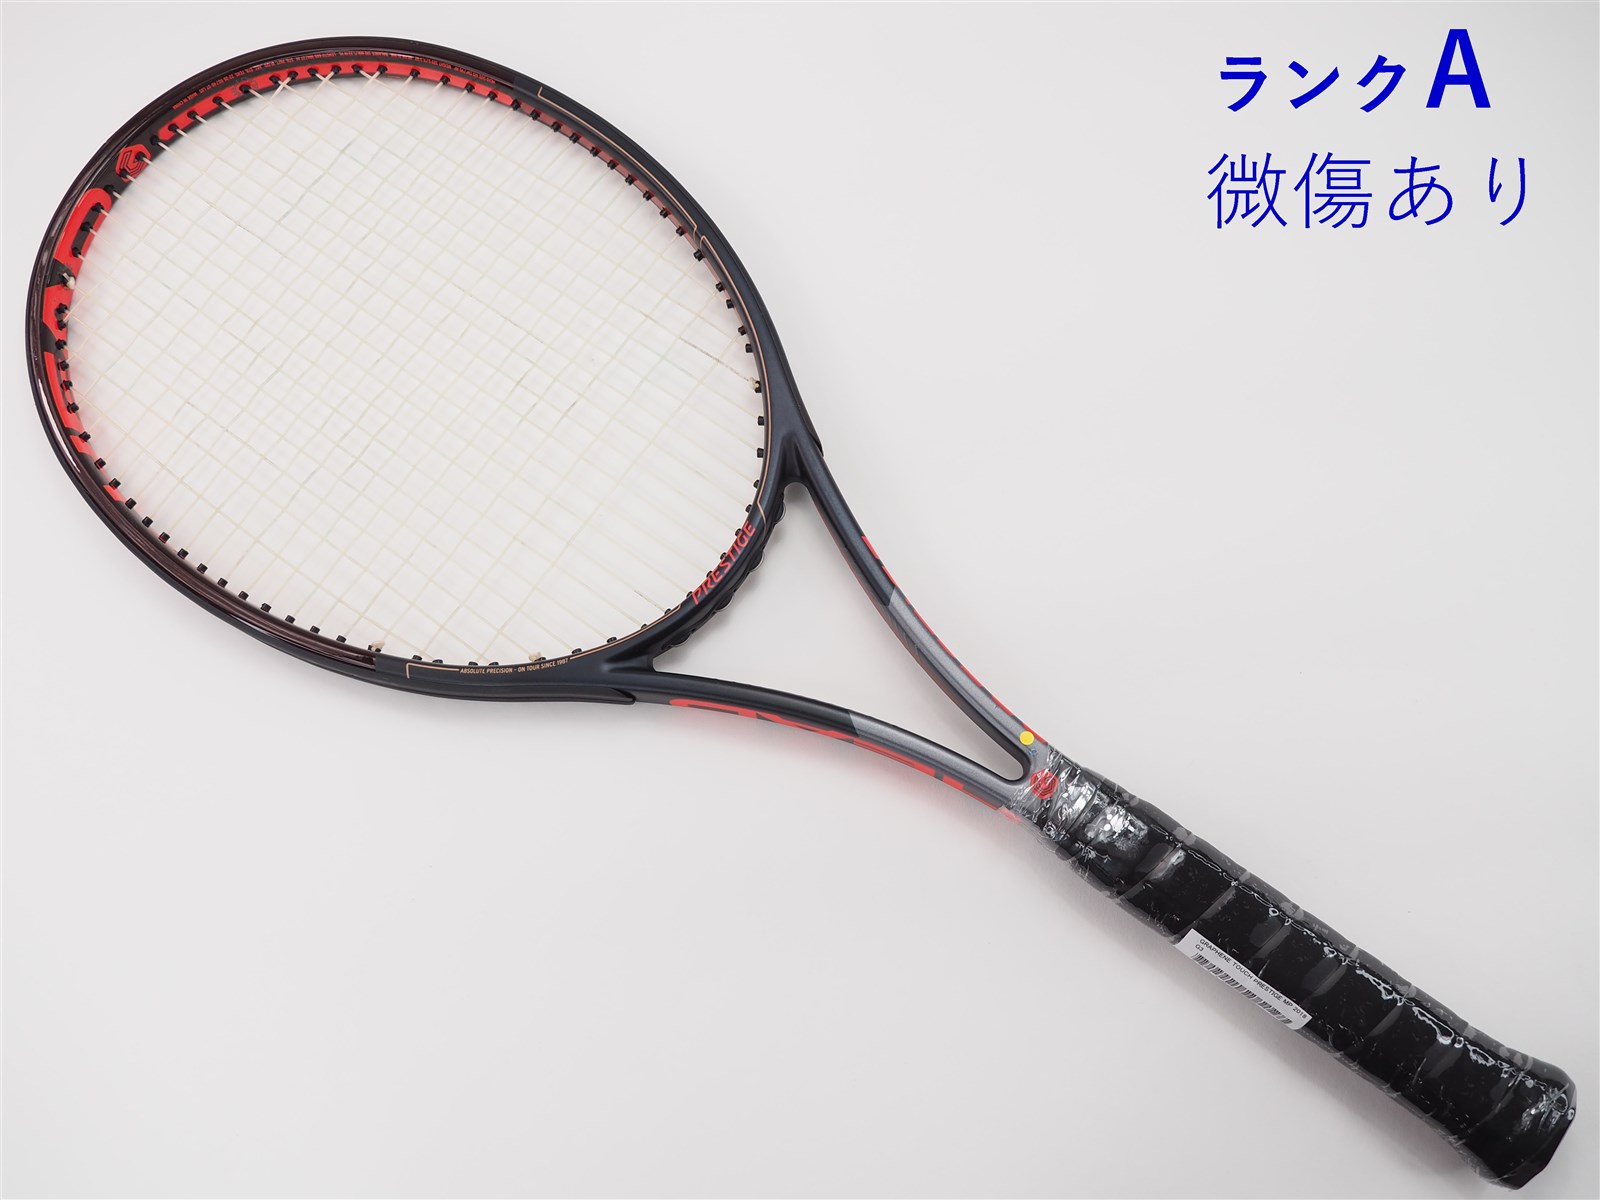 HEAD - 中古 テニスラケット ヘッド グラフィン プレステージ MP 2014